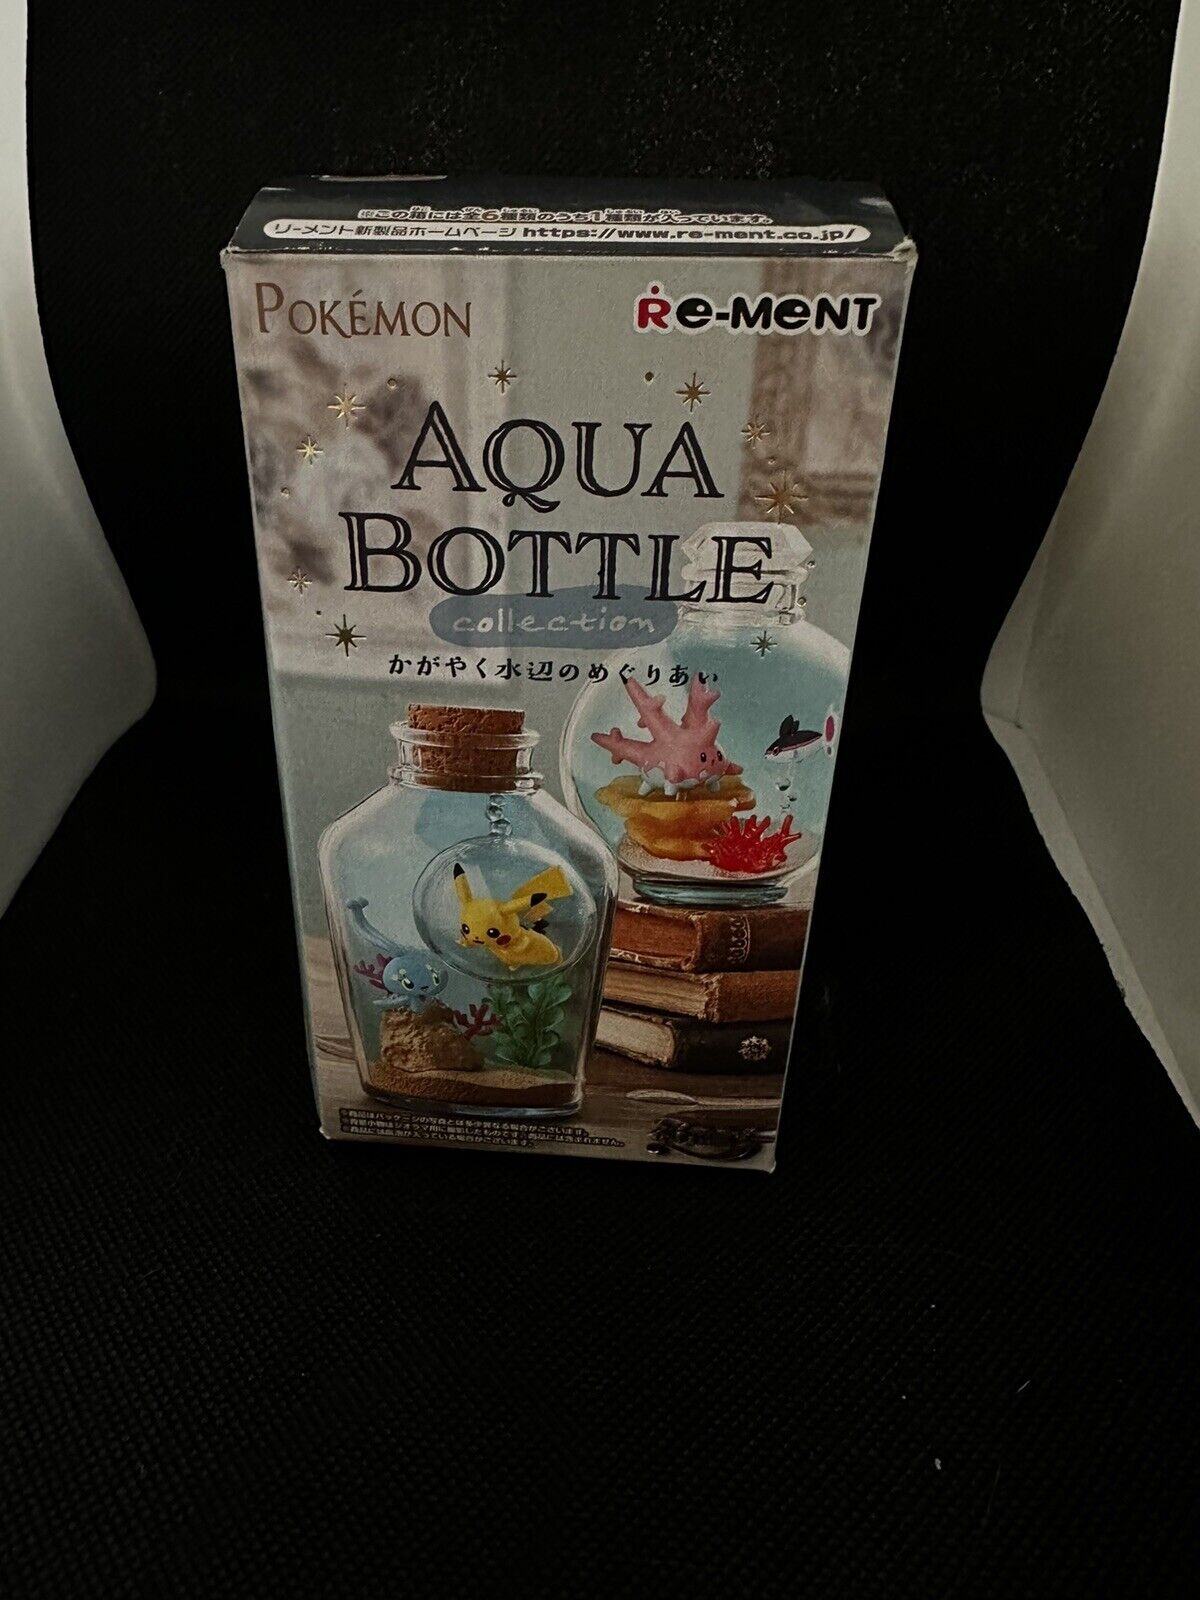 RE-MENT Pokémon Aqua Bottle Collection - Milotic (Open Box) US Seller